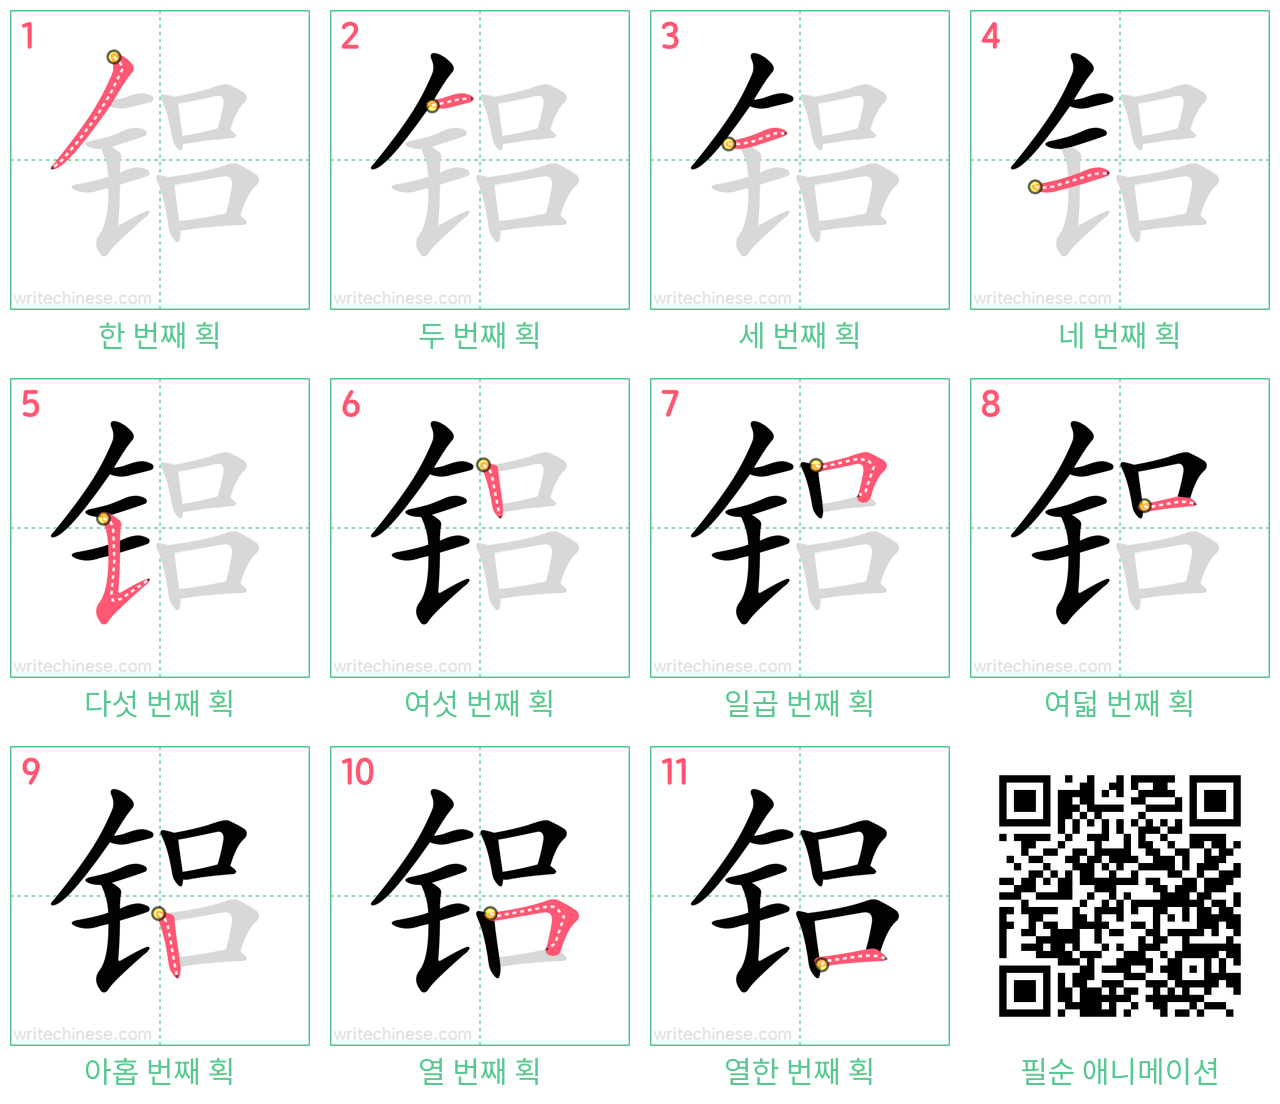 铝 step-by-step stroke order diagrams